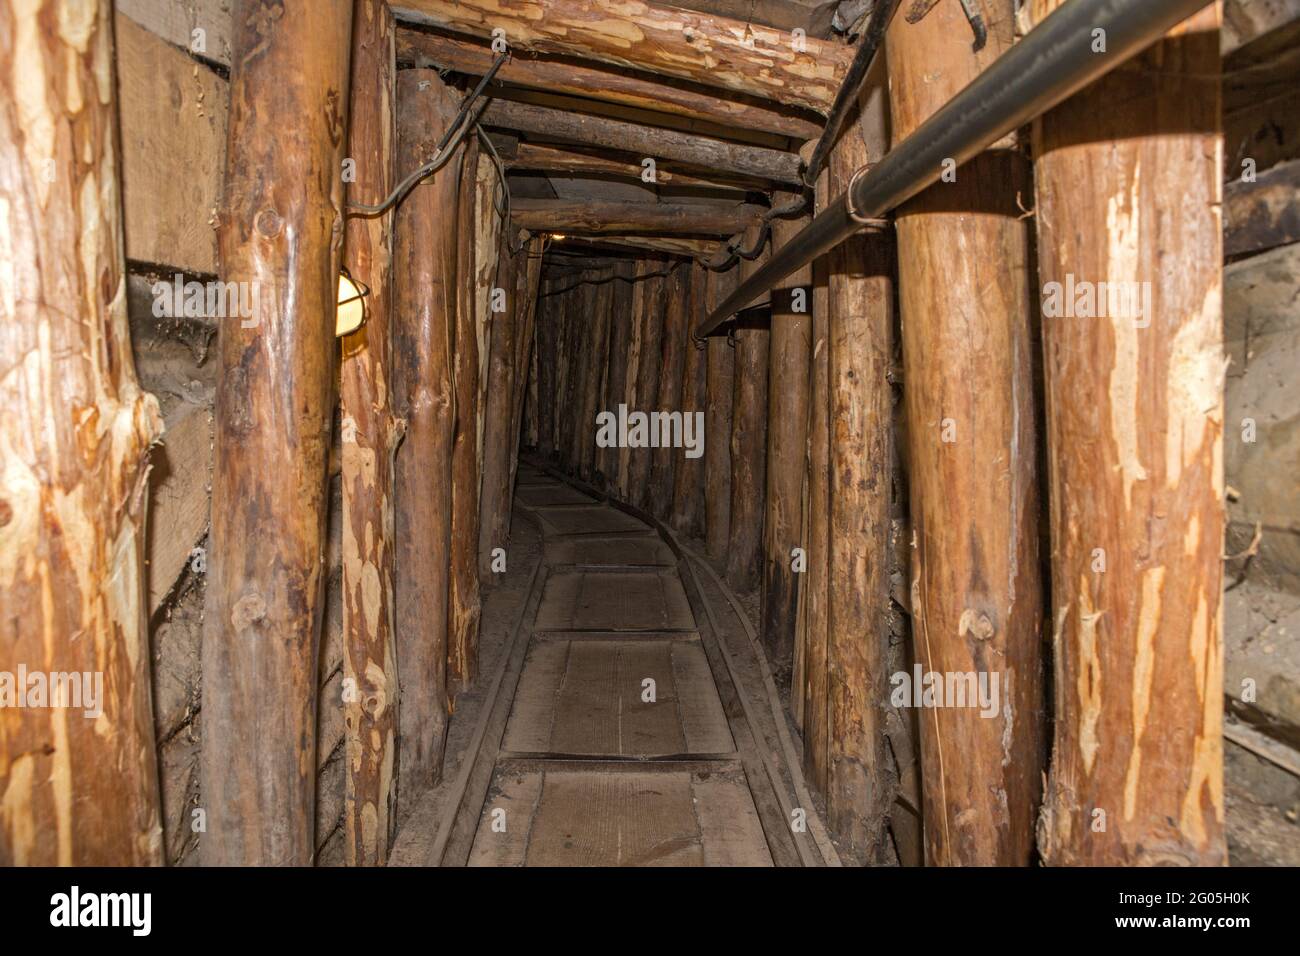 Sarajevo Tunnel akaTunel spasa = Tunnel of rescue  or Tunnel of Hope, Sarajevo, Bosnia, Bosnia and Herzegovina Stock Photo